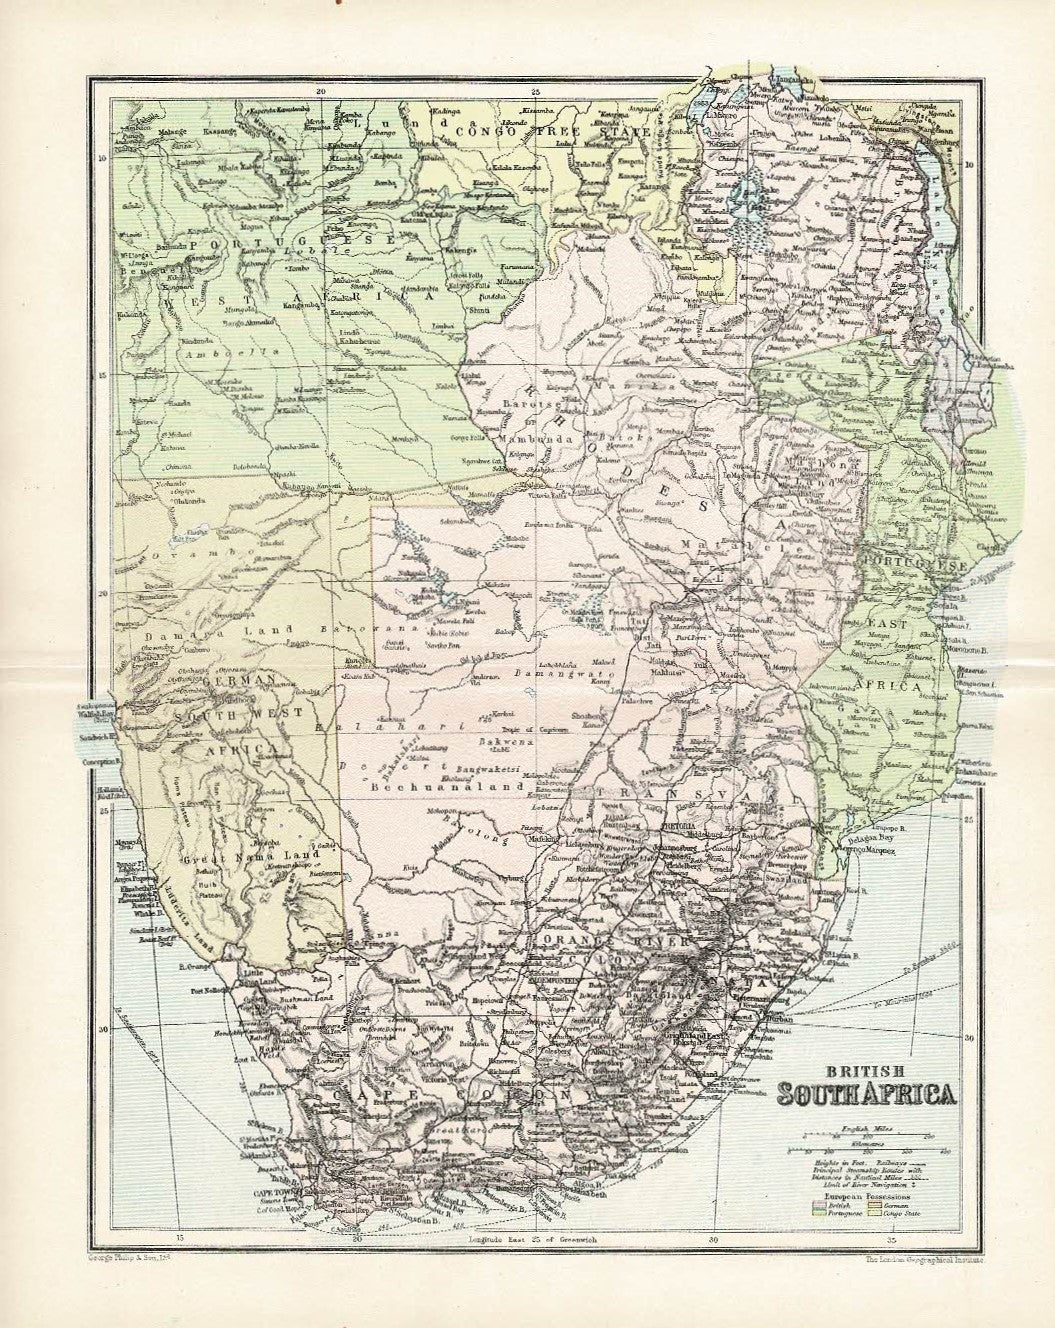 British South Africa original antique map